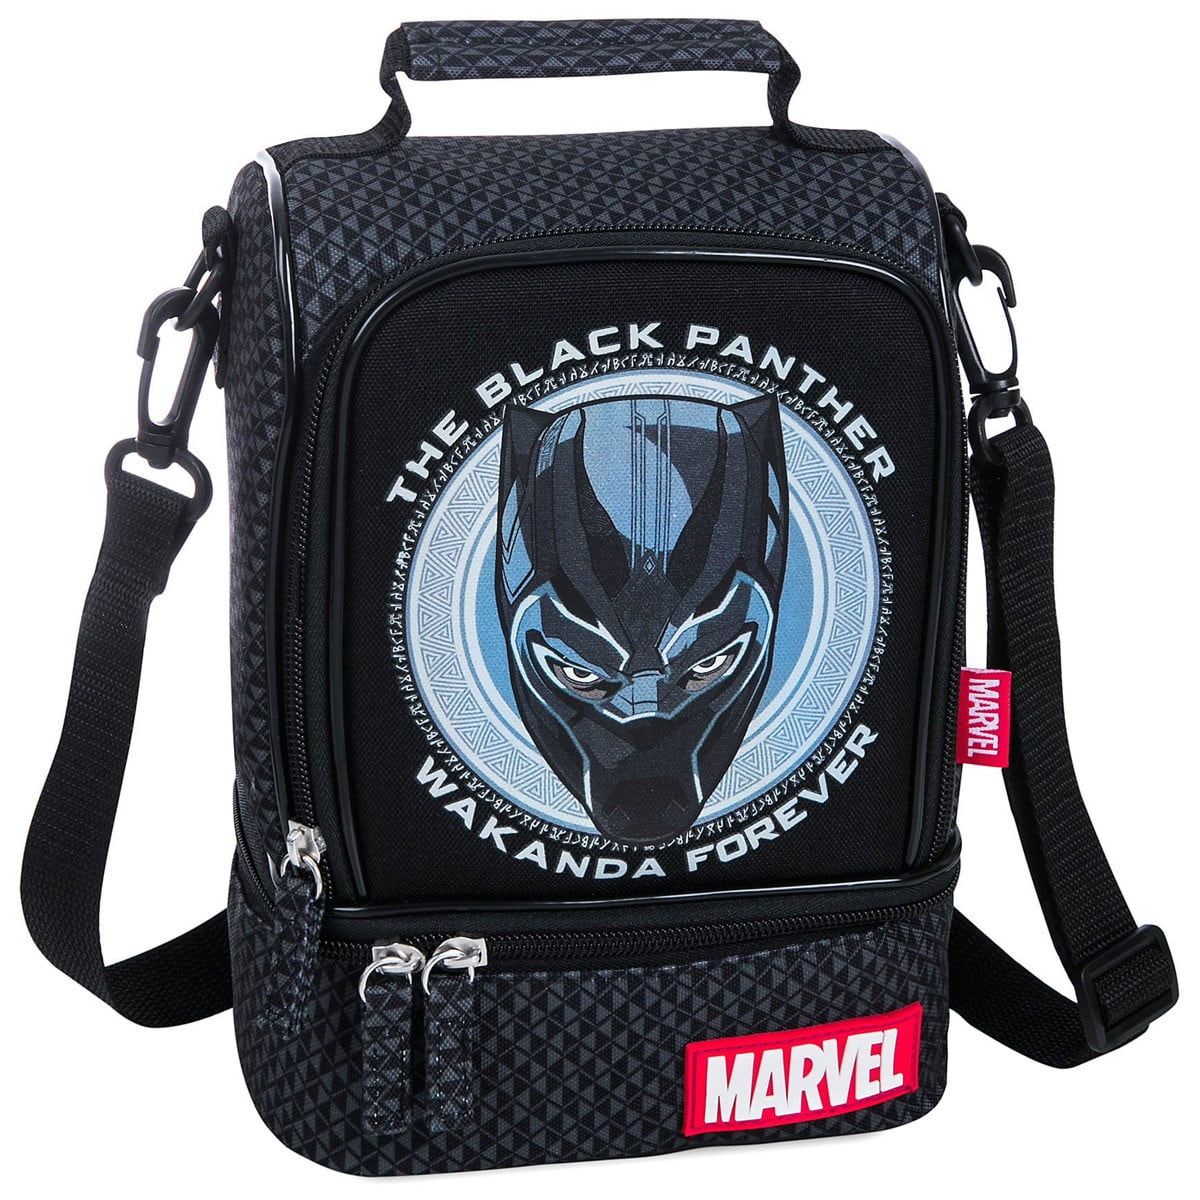 Set of 3 17 inch Black Panther Boy Backpack Book Bag Lunch Bag Satchel Wholesale 